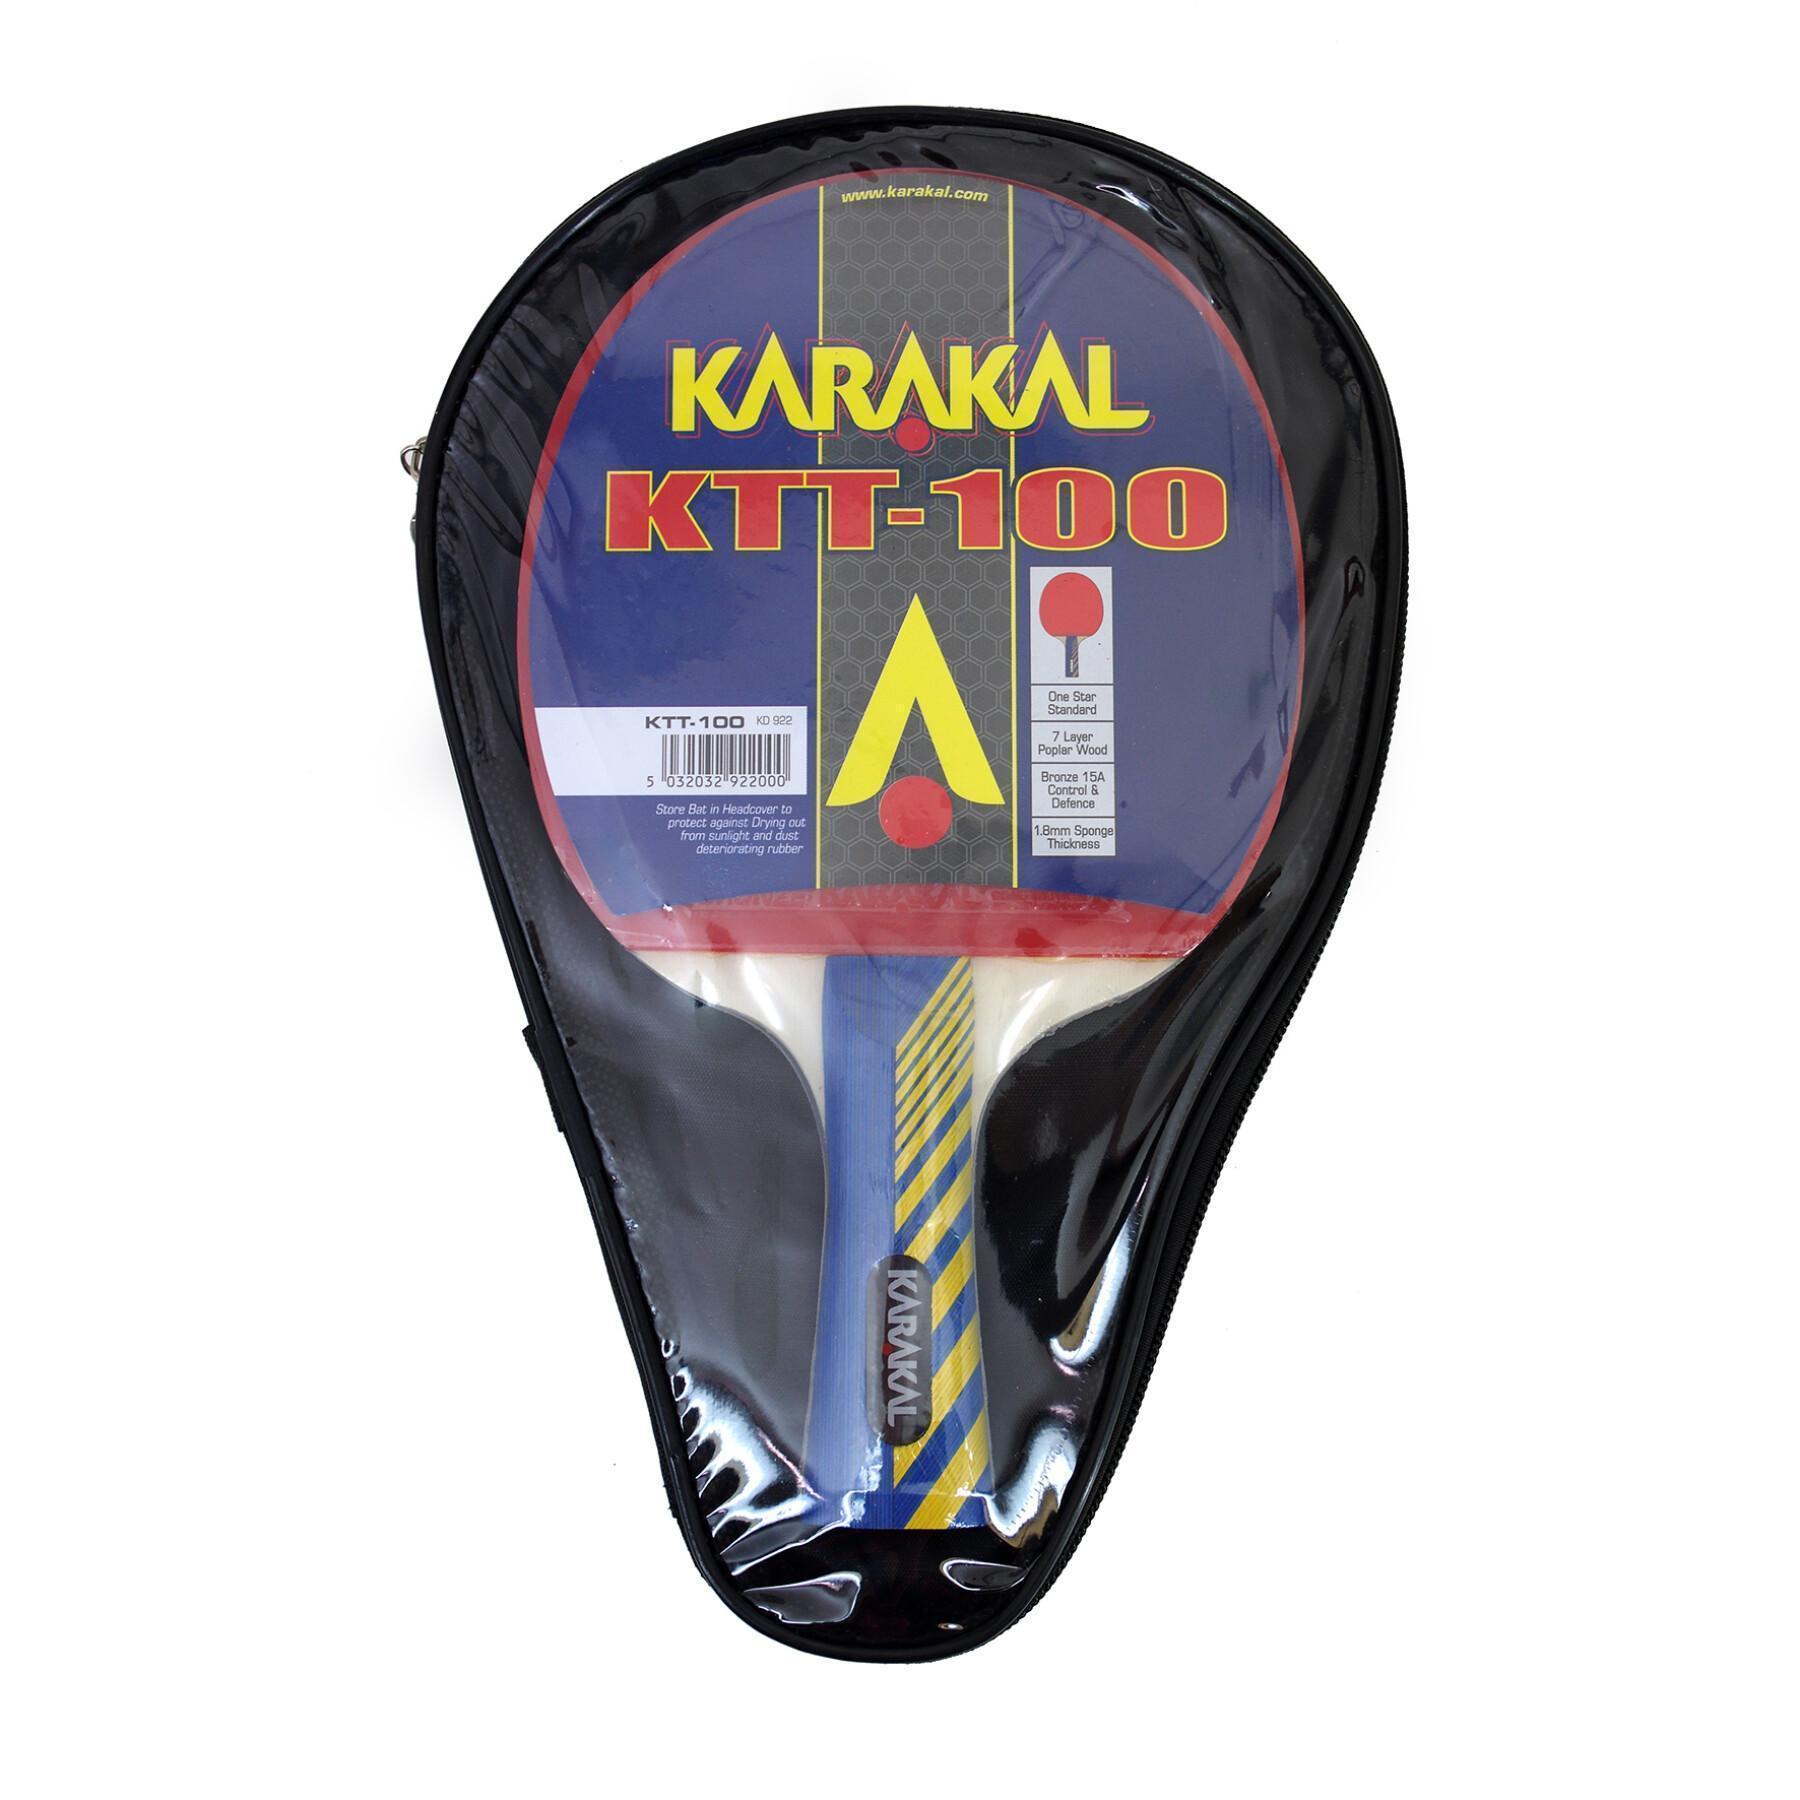 Racket för bordtennis Karakal KTT 100